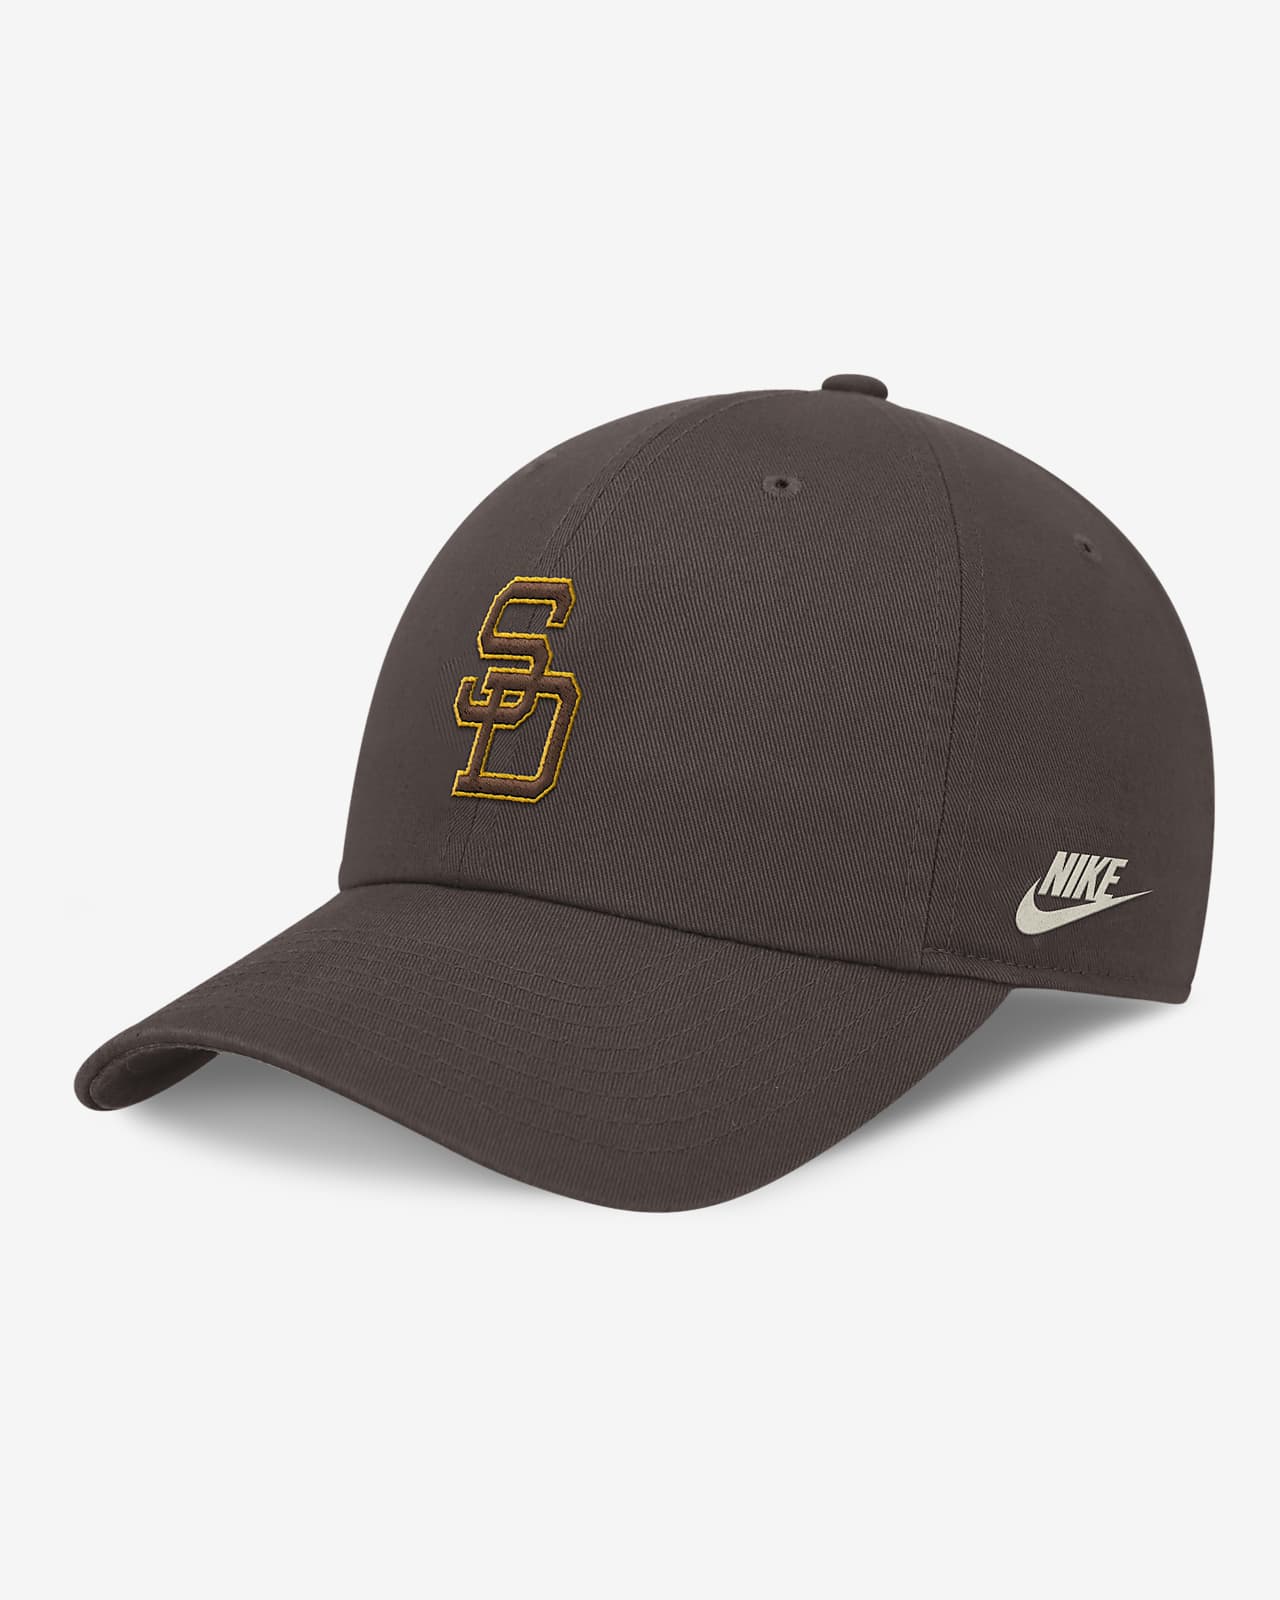 San Diego Padres Rewind Cooperstown Club Men's Nike MLB Adjustable Hat